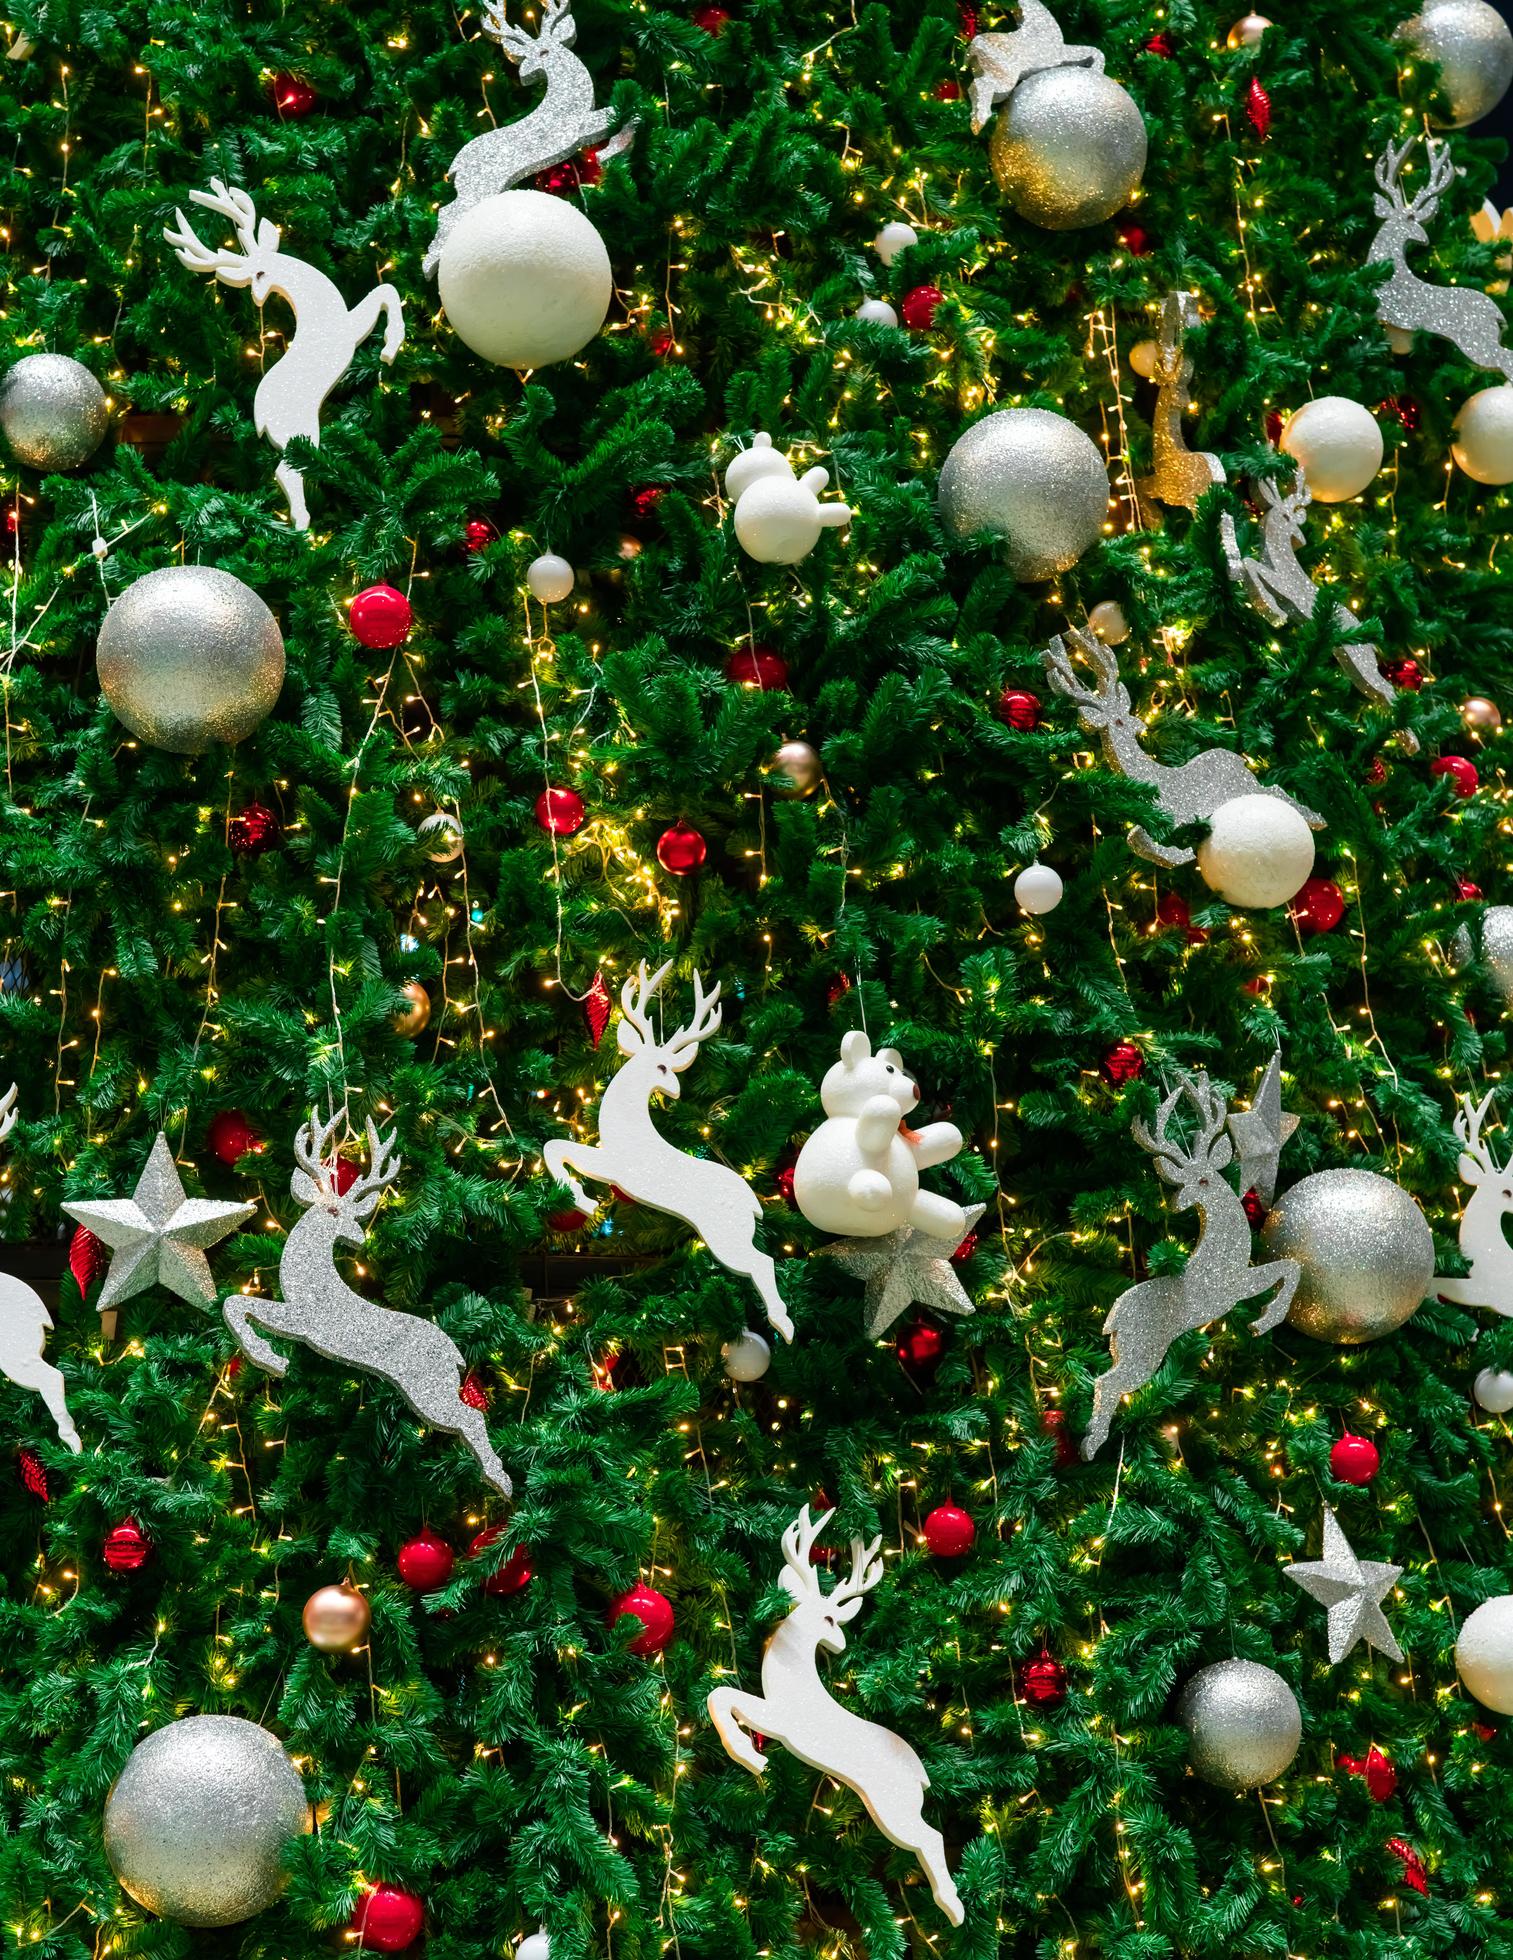 Atlantische Oceaan Negen uitlokken close-up kerstboomversiering met rode, gouden, zilveren en witte ballen,  zilveren ster en witte rendieren. Kerstmis achtergrond. kerstmis en  gelukkig nieuwjaar achtergrond. kleurrijke bal op kerstboom. 7763341  stockfoto bij Vecteezy